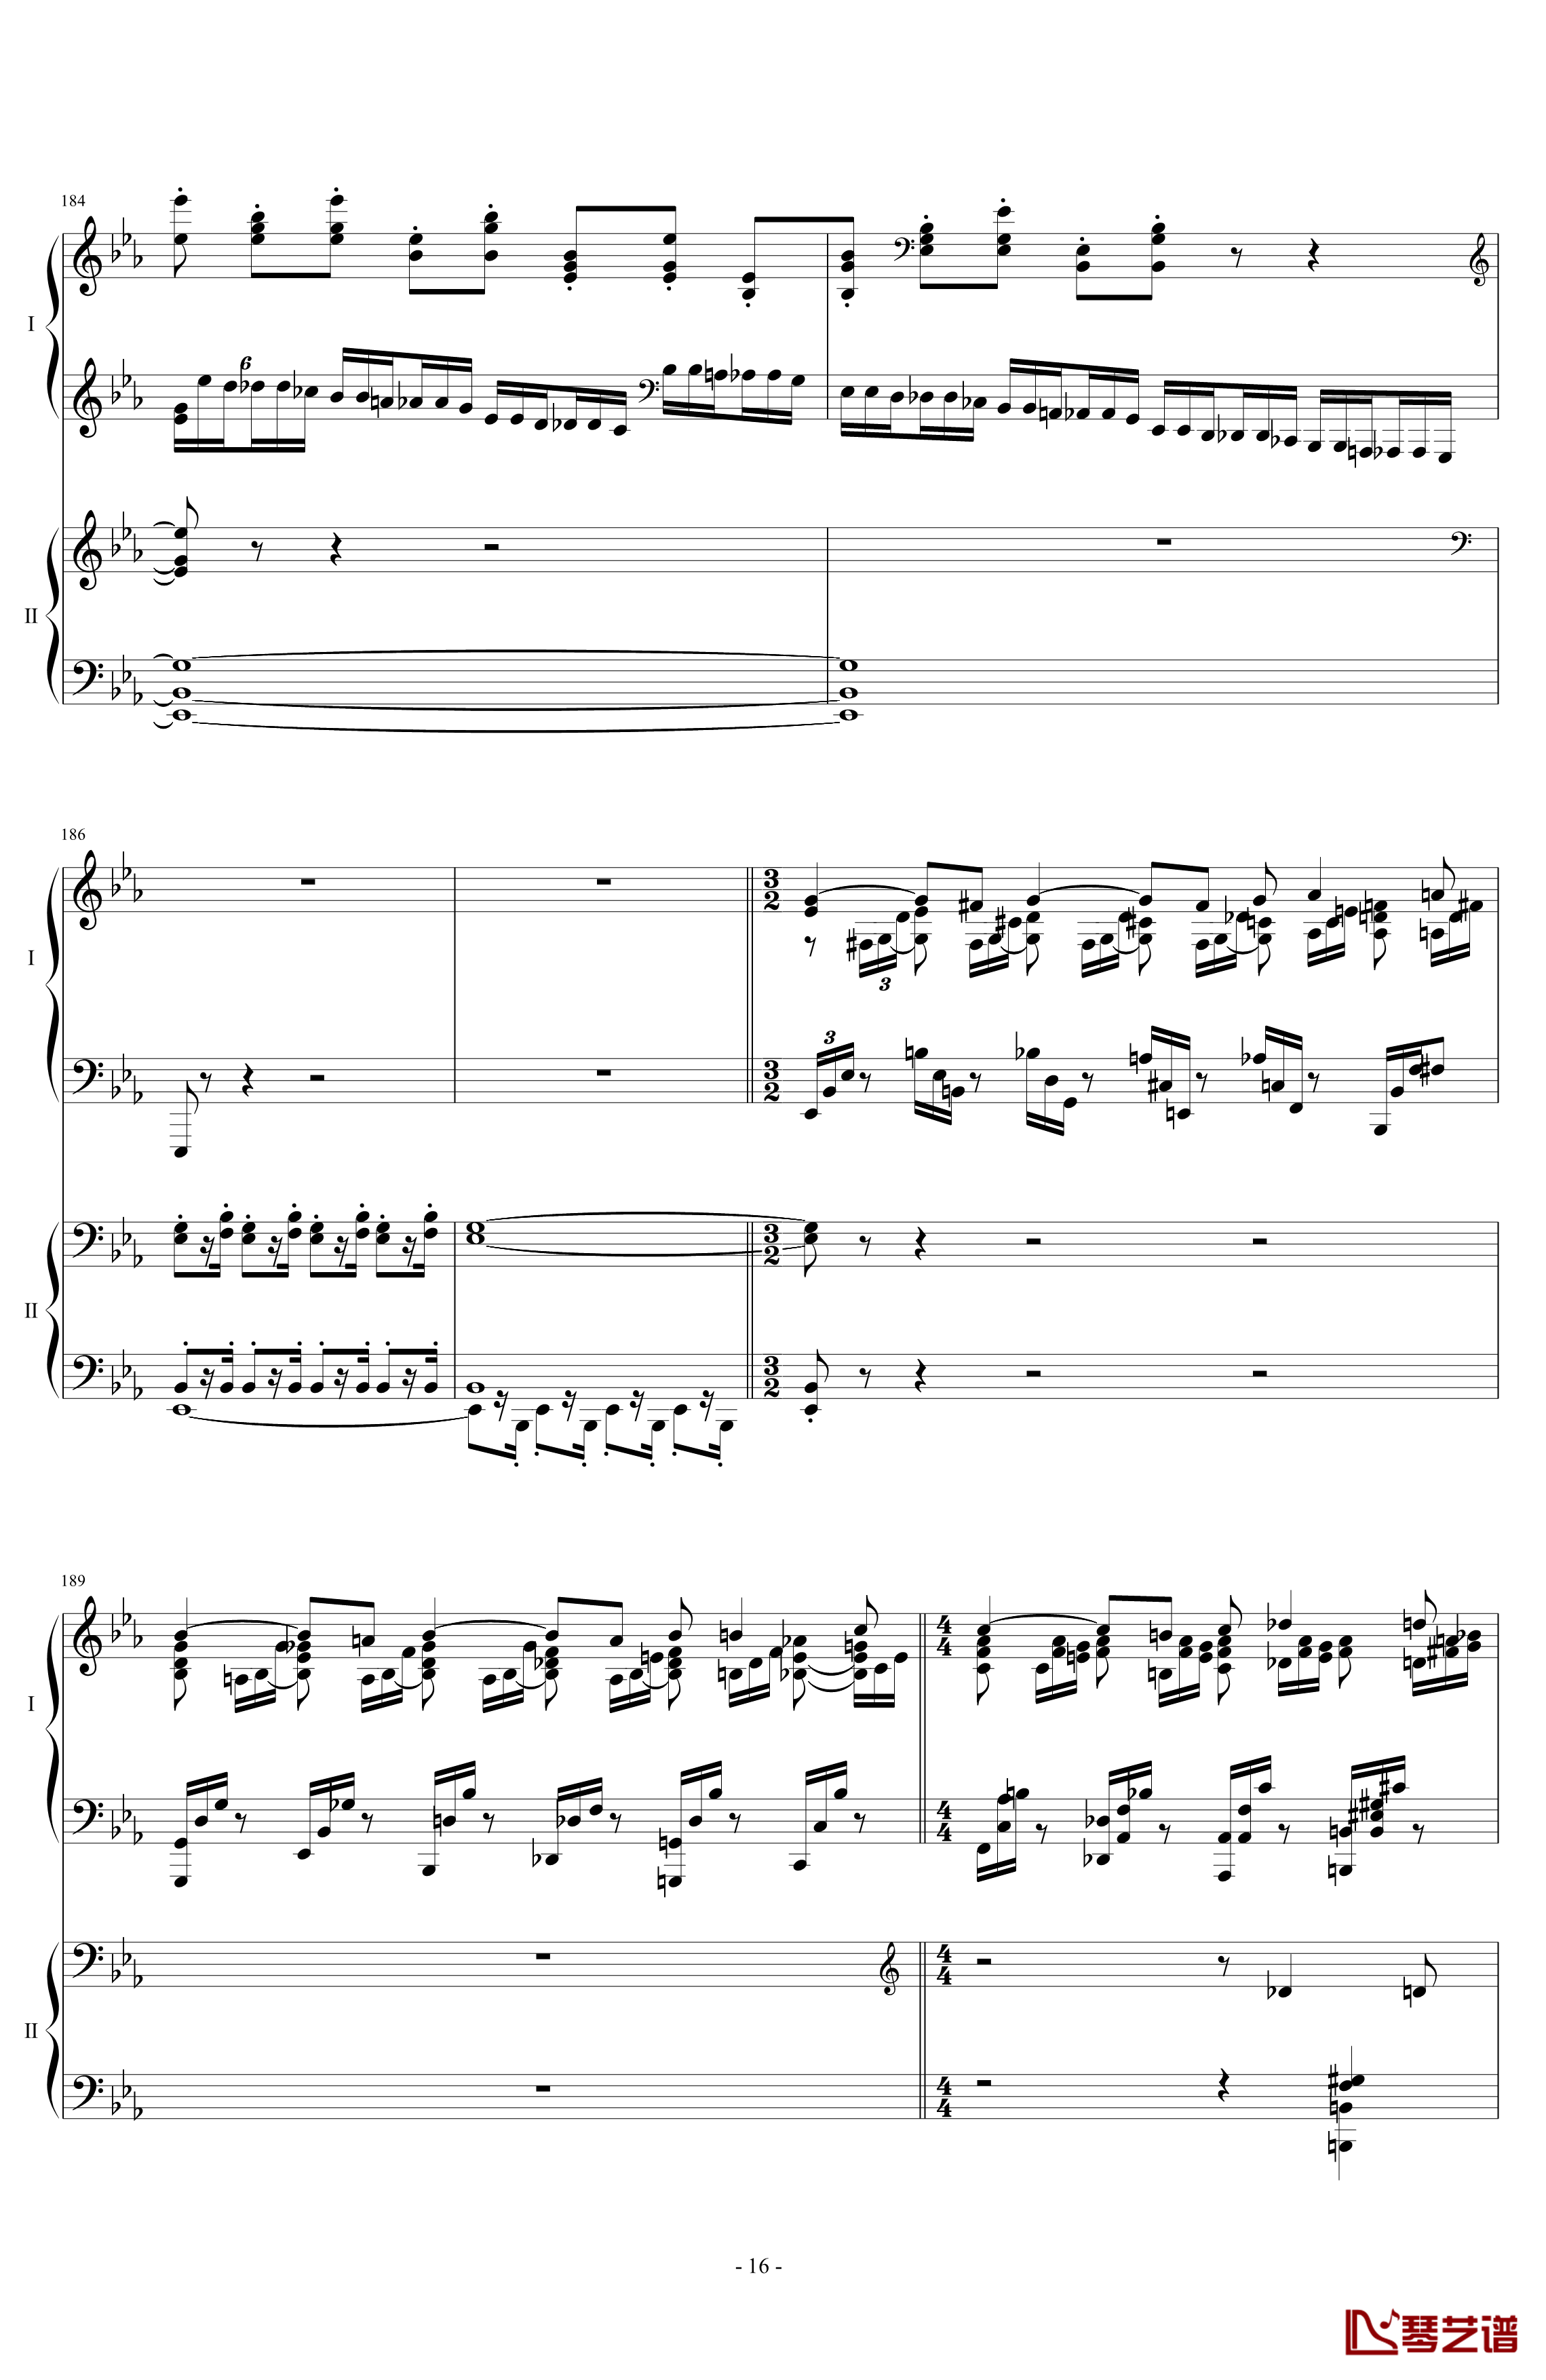 拉三第三乐章41页双钢琴钢琴谱-最难钢琴曲-拉赫马尼若夫16